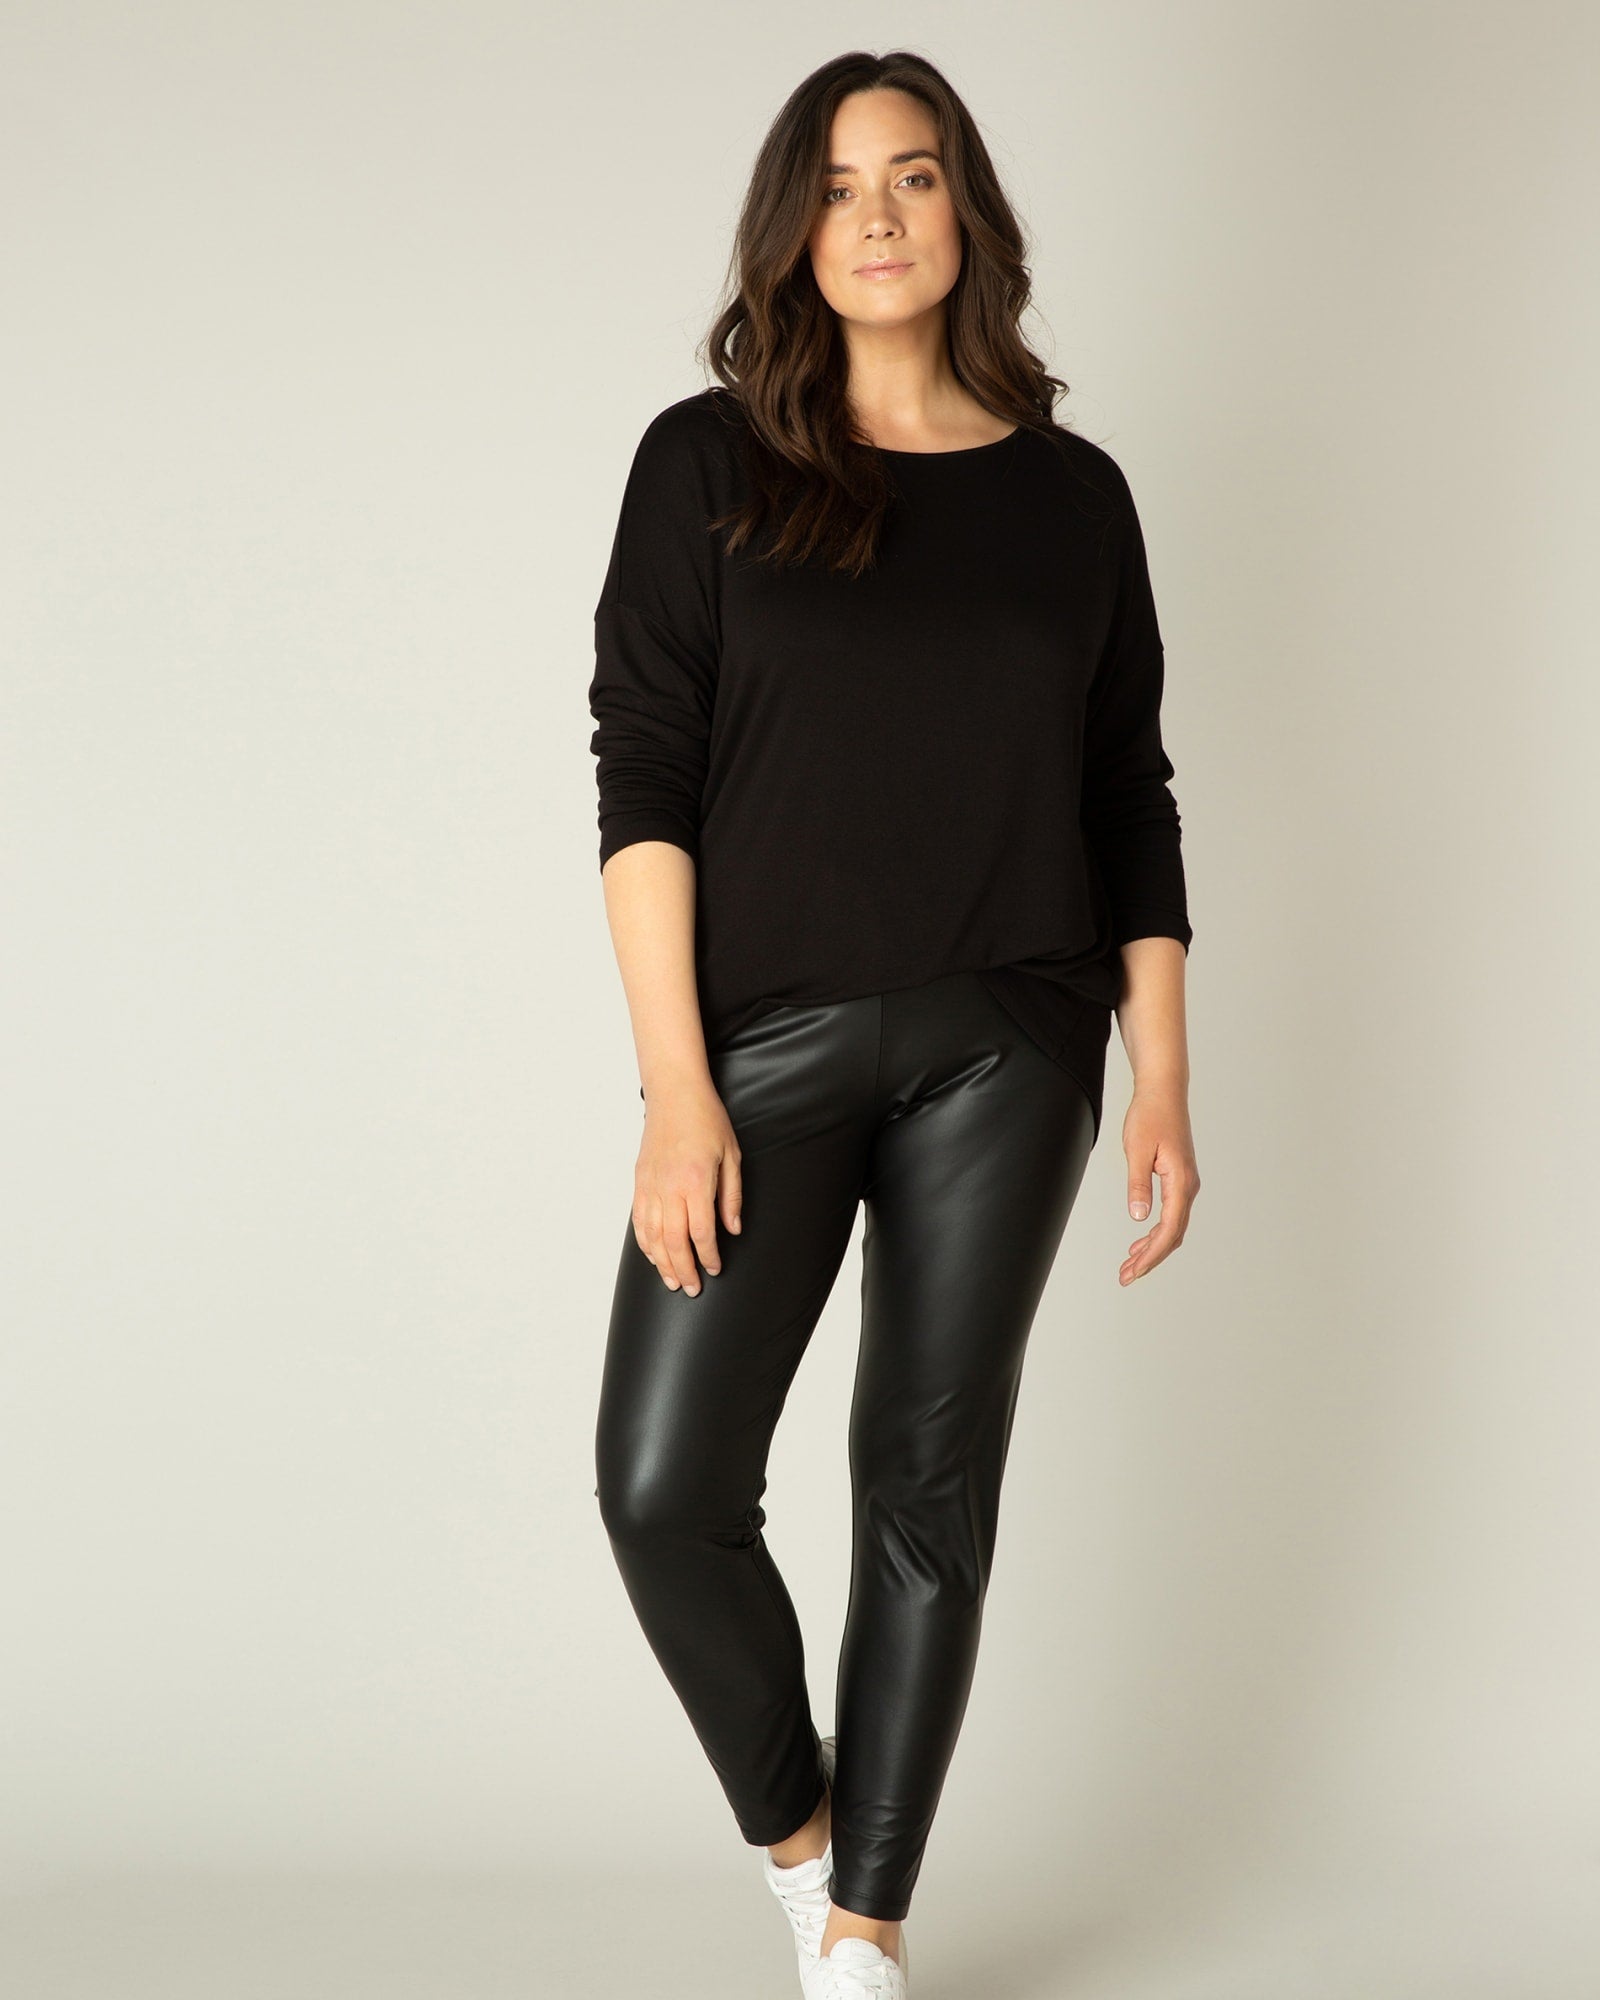 Buy ZERDOCEANWomen's Plus Size Stretchy Soft Lightweight Full Length  Leggings Online at desertcartSeychelles